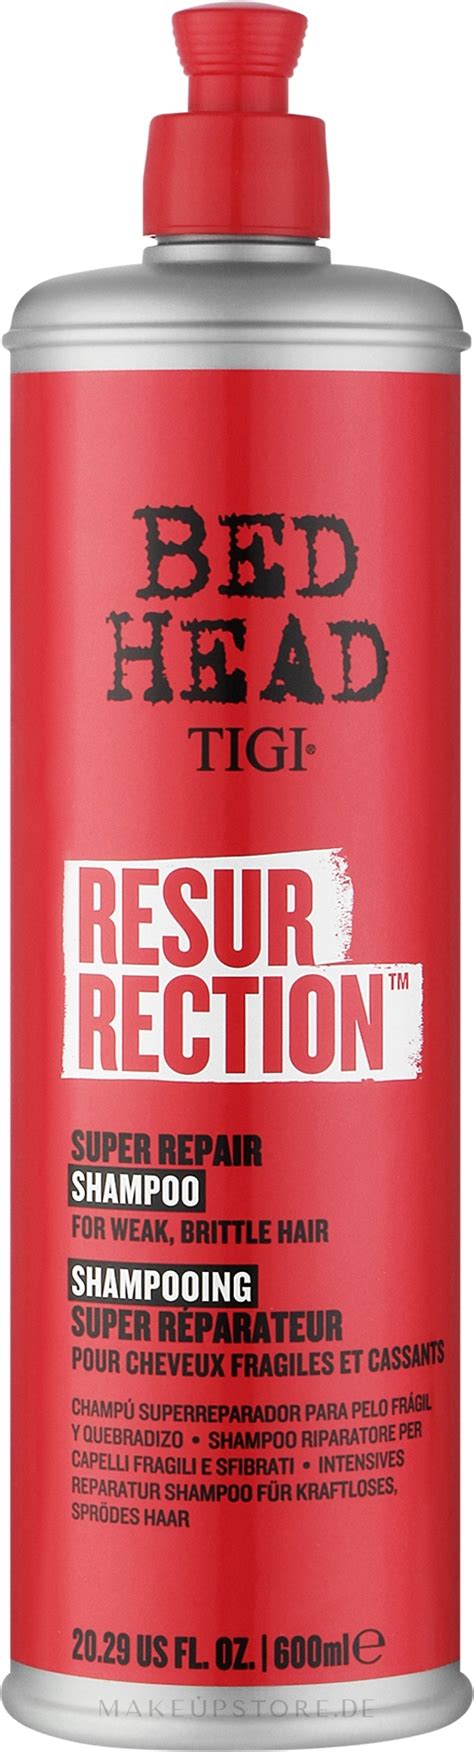 Tigi Bed Head Resurrection Super Repair Shampoo Intensives Reparatur